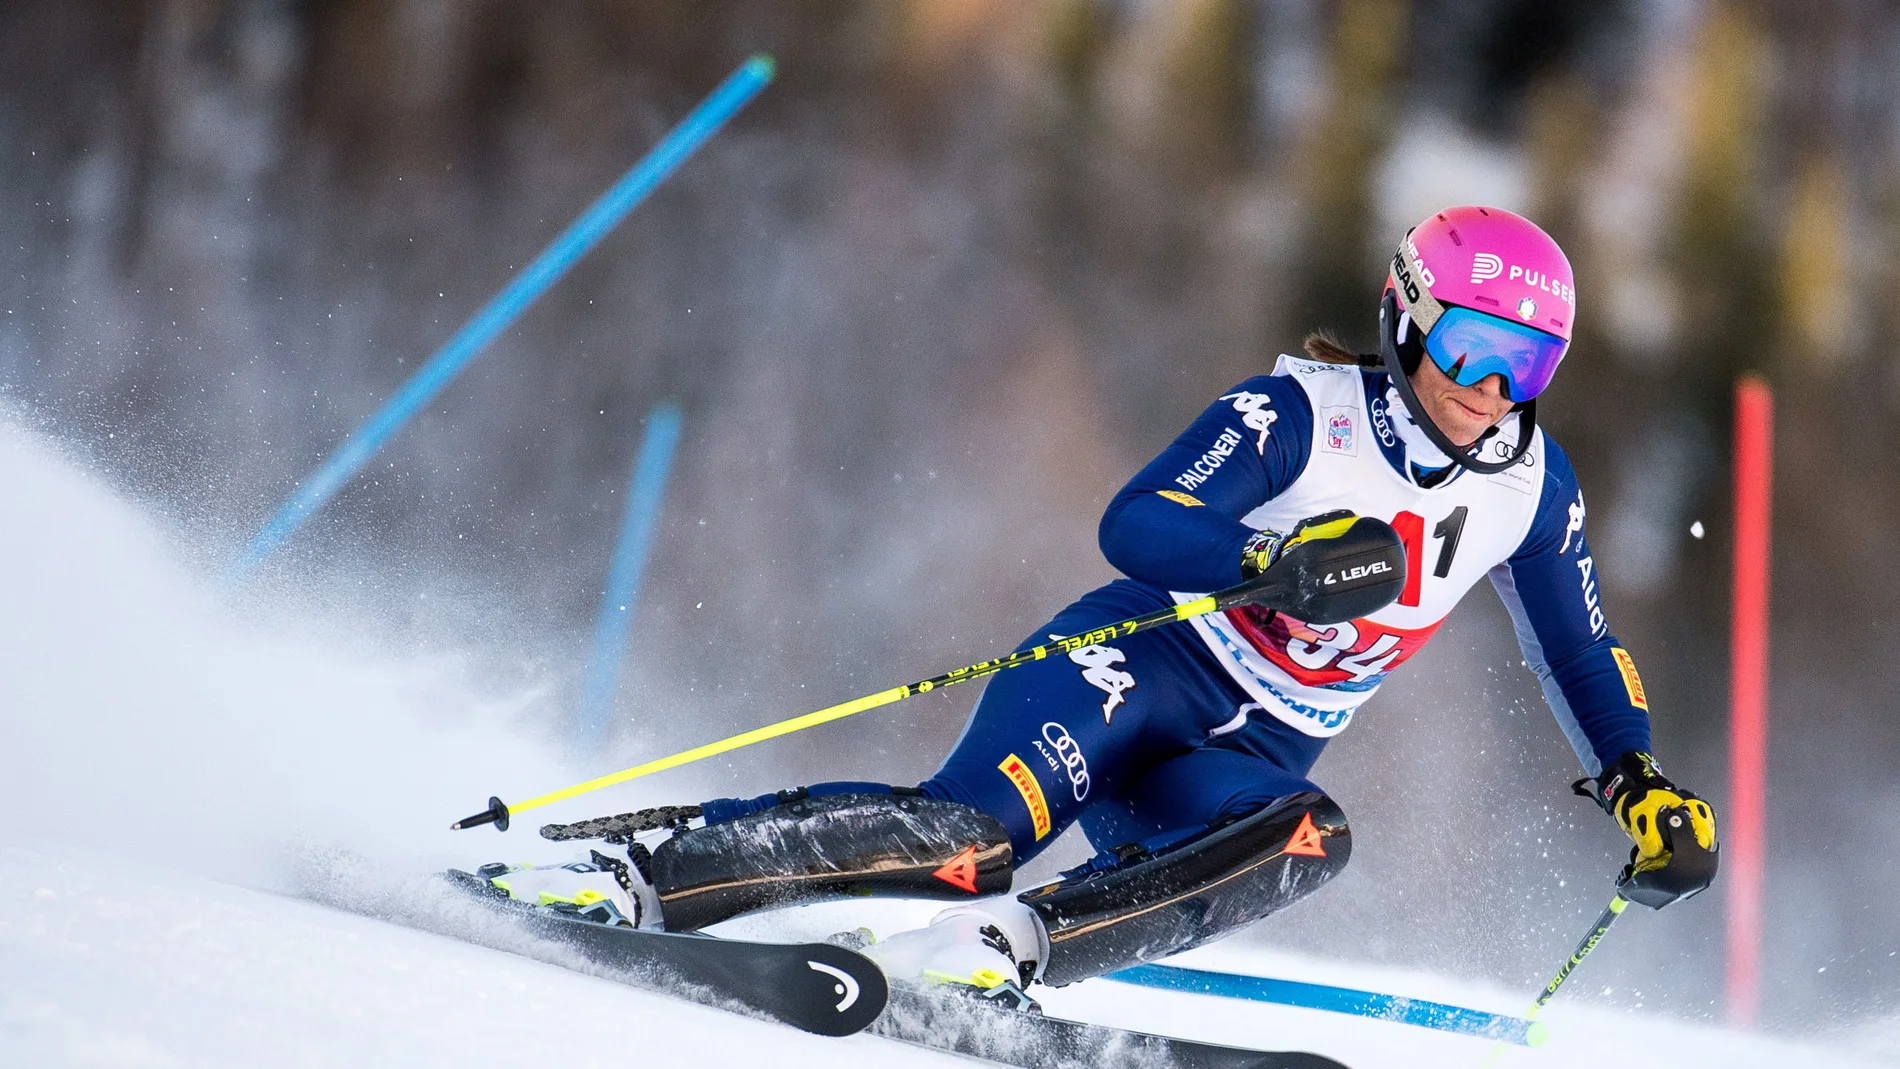 FIS Alpine Skiing World Cup in Zauchensee